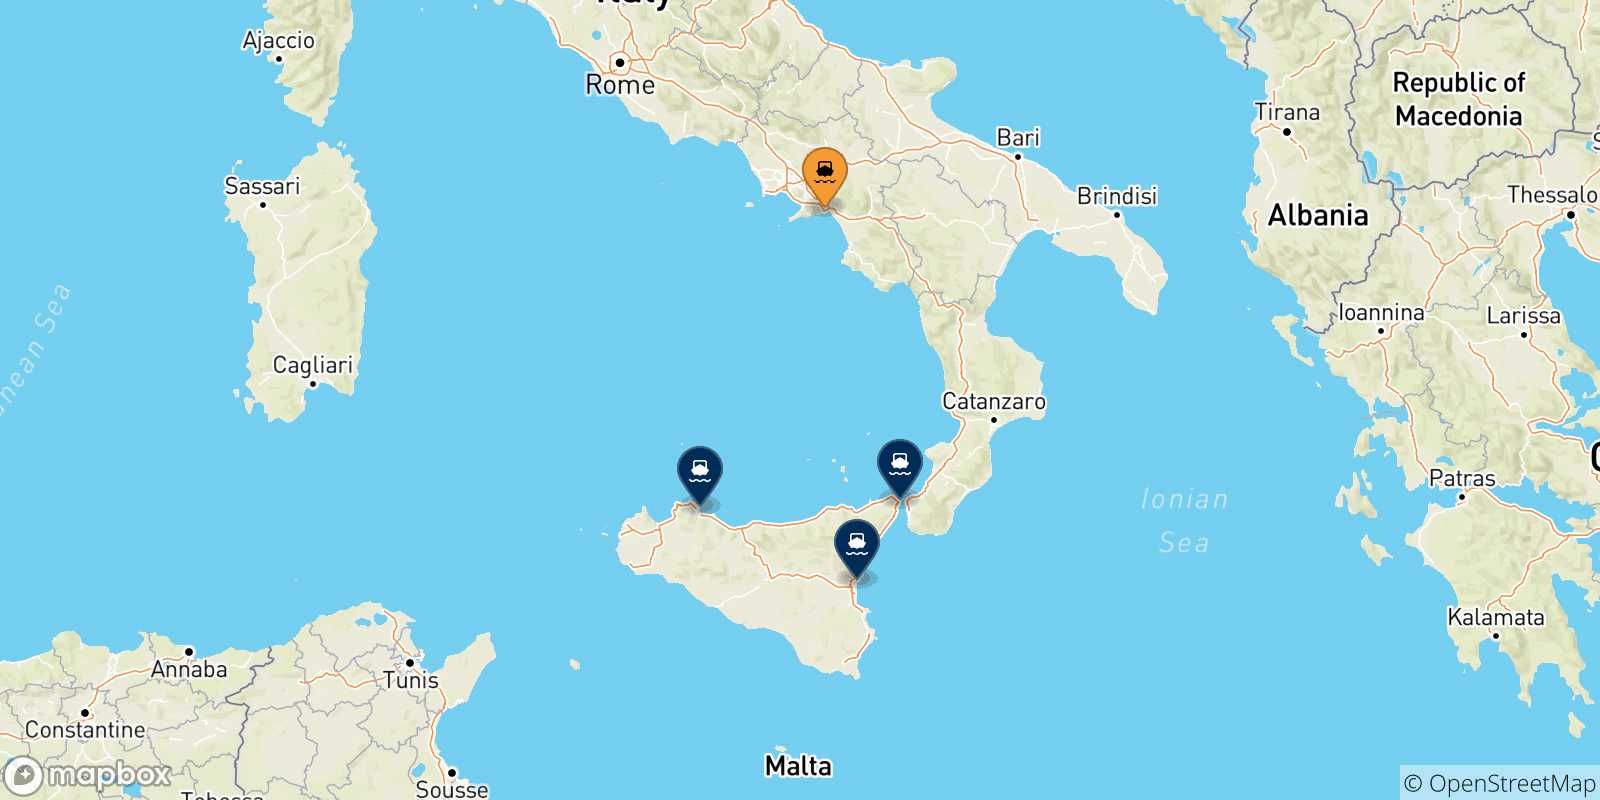 Mappa delle possibili rotte tra Salerno e la Sicilia